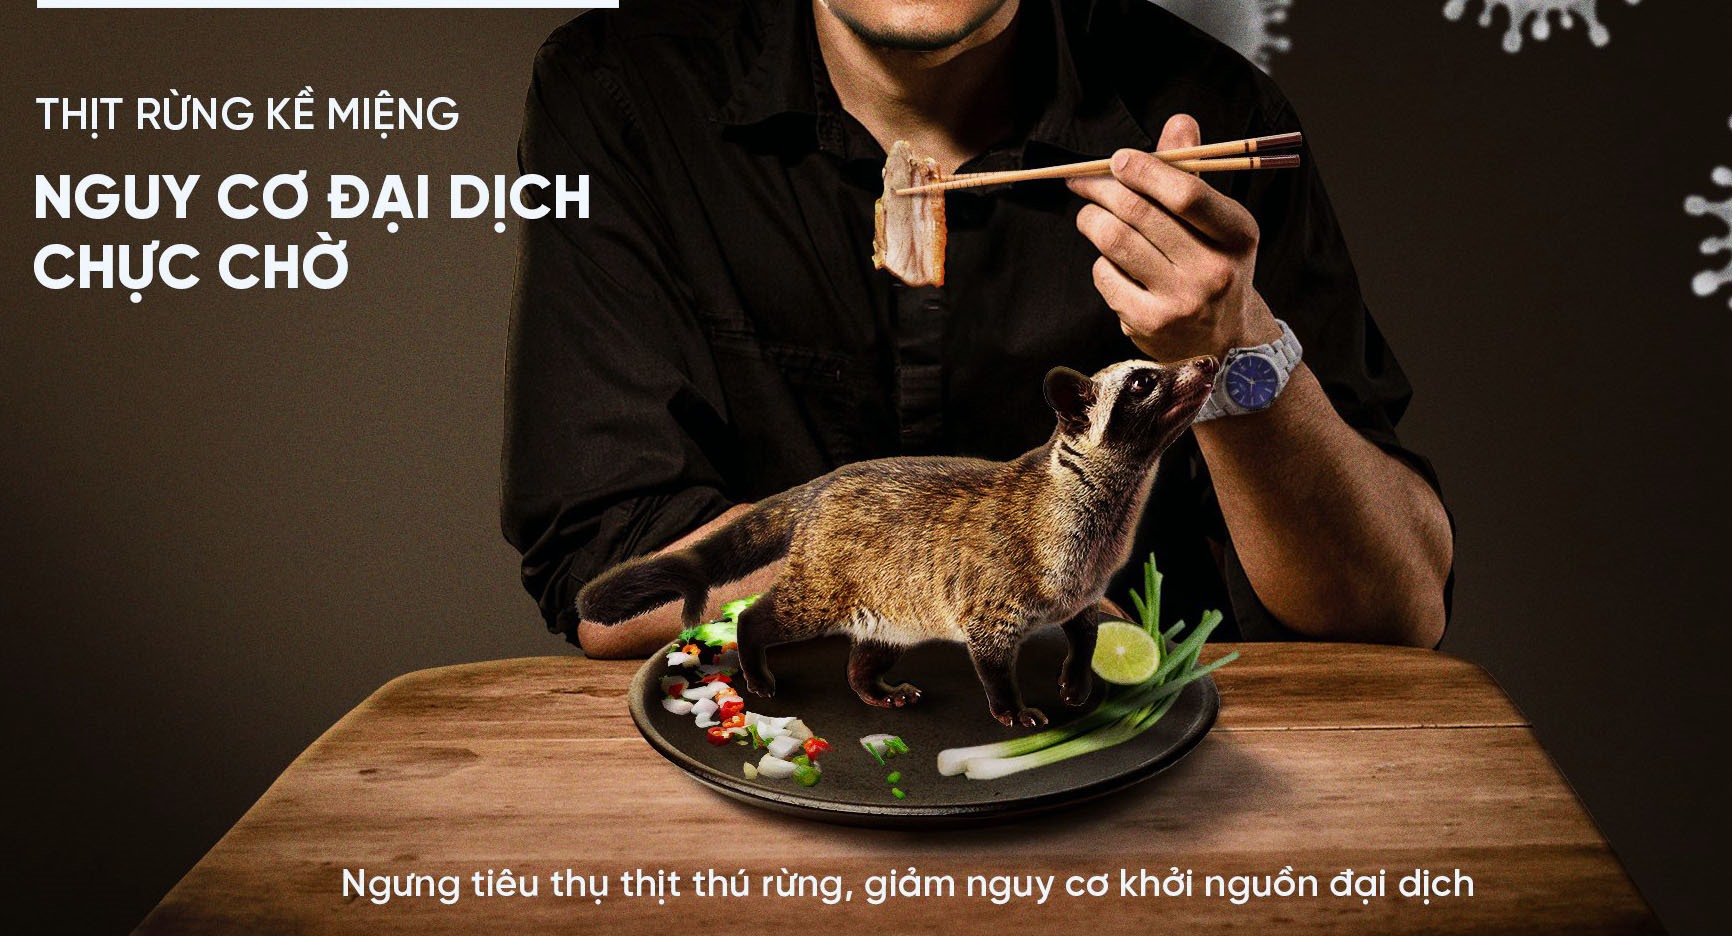 Ngưng tiêu thụ thịt động vật hoang dã ngay từ hôm nay để bảo vệ sức khoẻ cộng đồng. Ảnh: WWF Việt Nam.